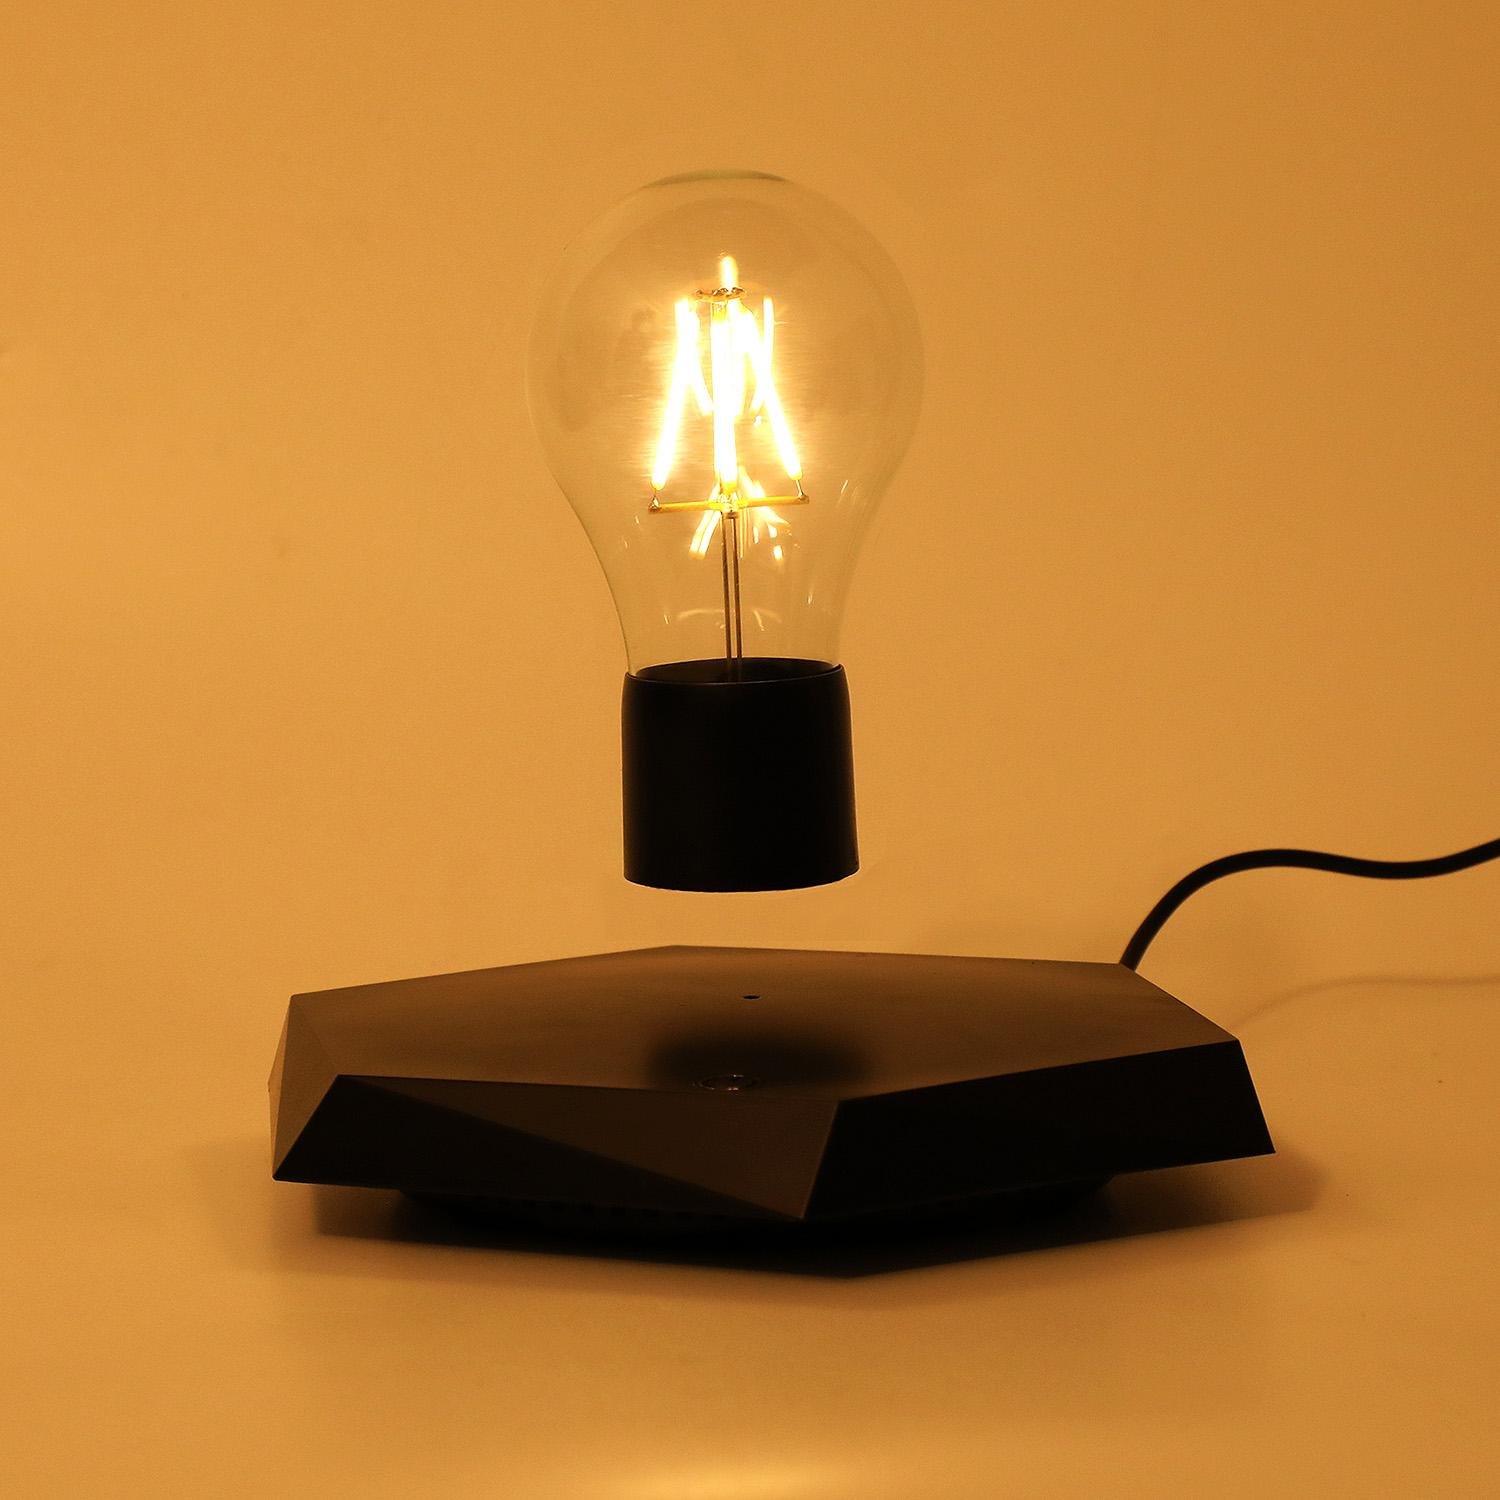 new wireless magnetic levitation floating desk table lamp light bulb for decor  5